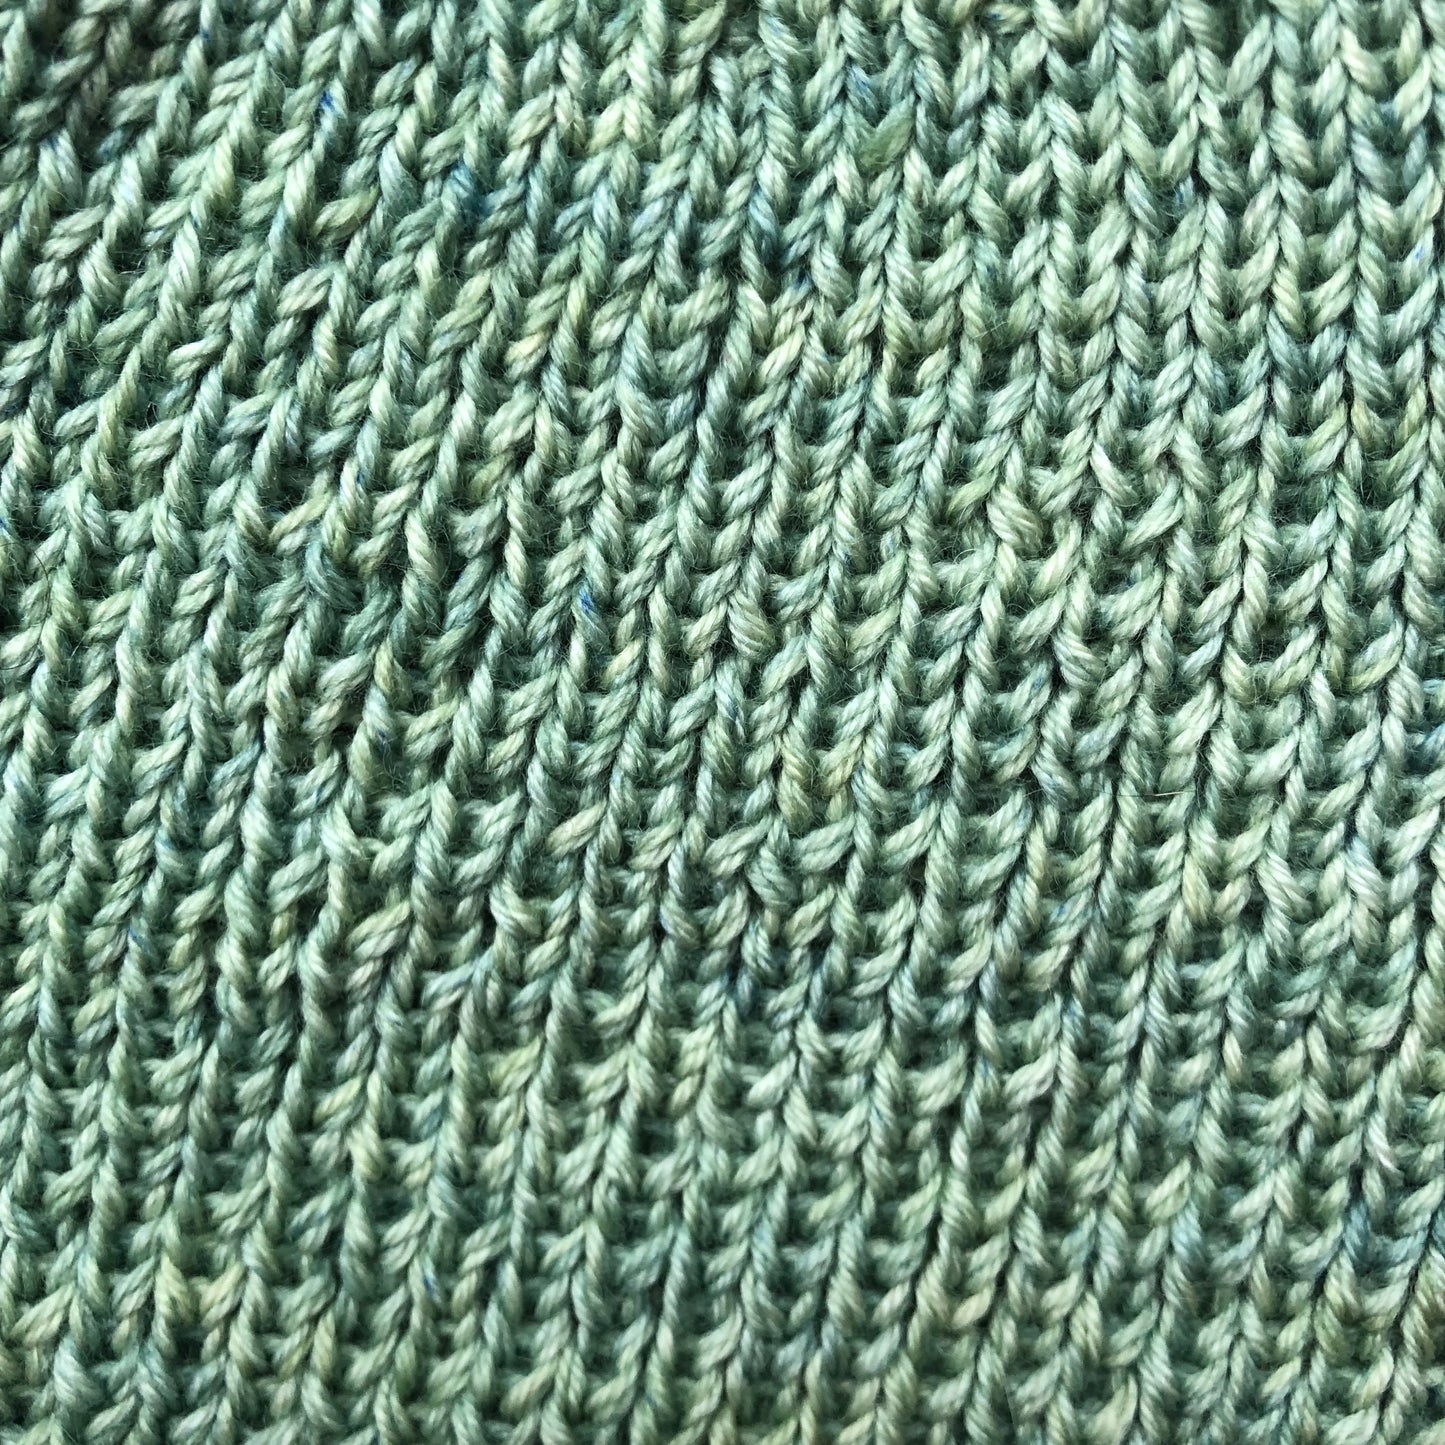 Tuque / bonnet en tricot extensible (taille unique)